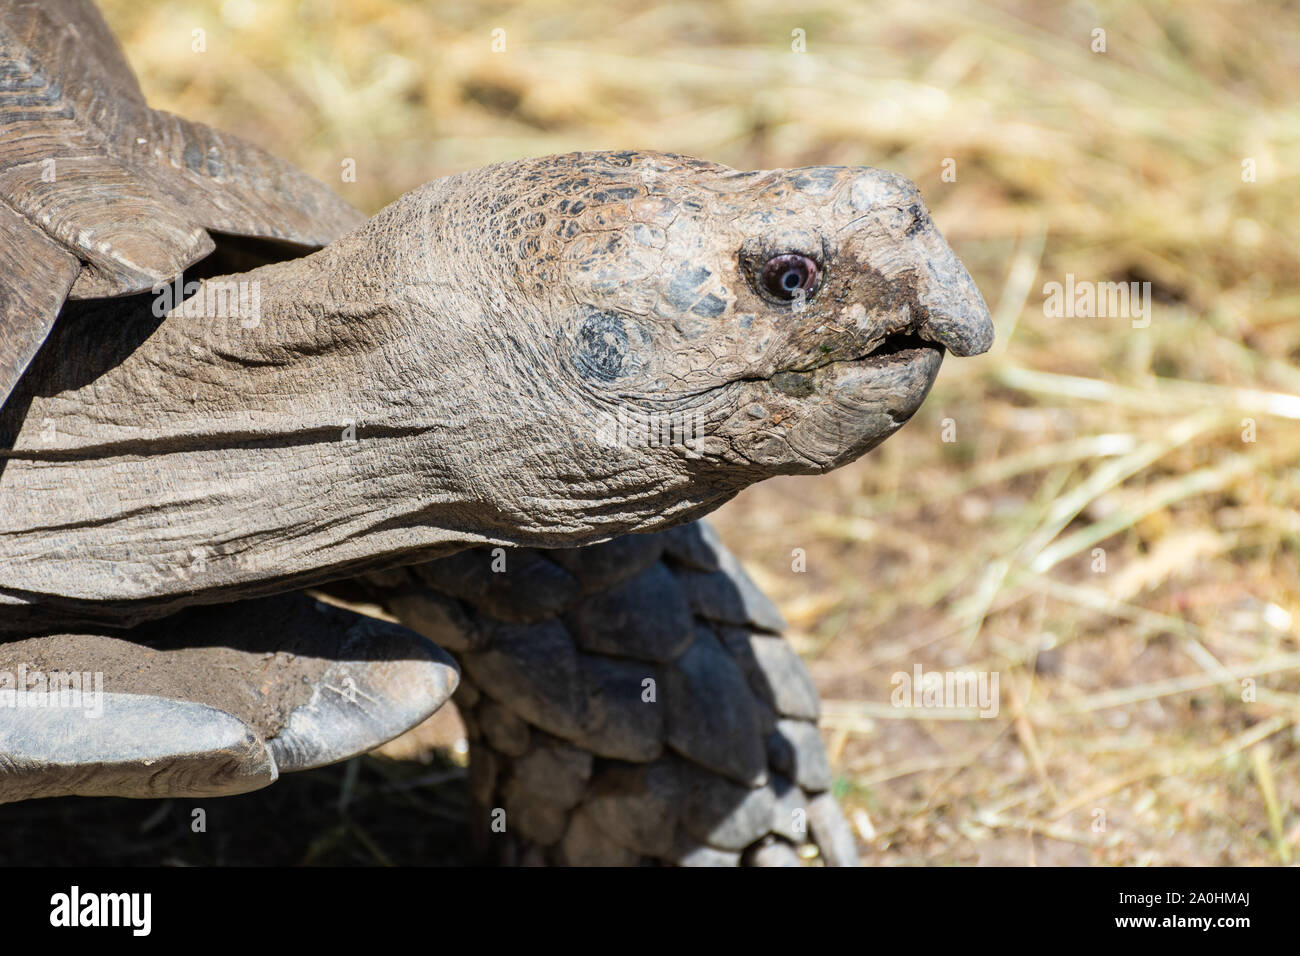 Head of Burmese Brown Tortoise (Manouria emys emys). Stock Photo